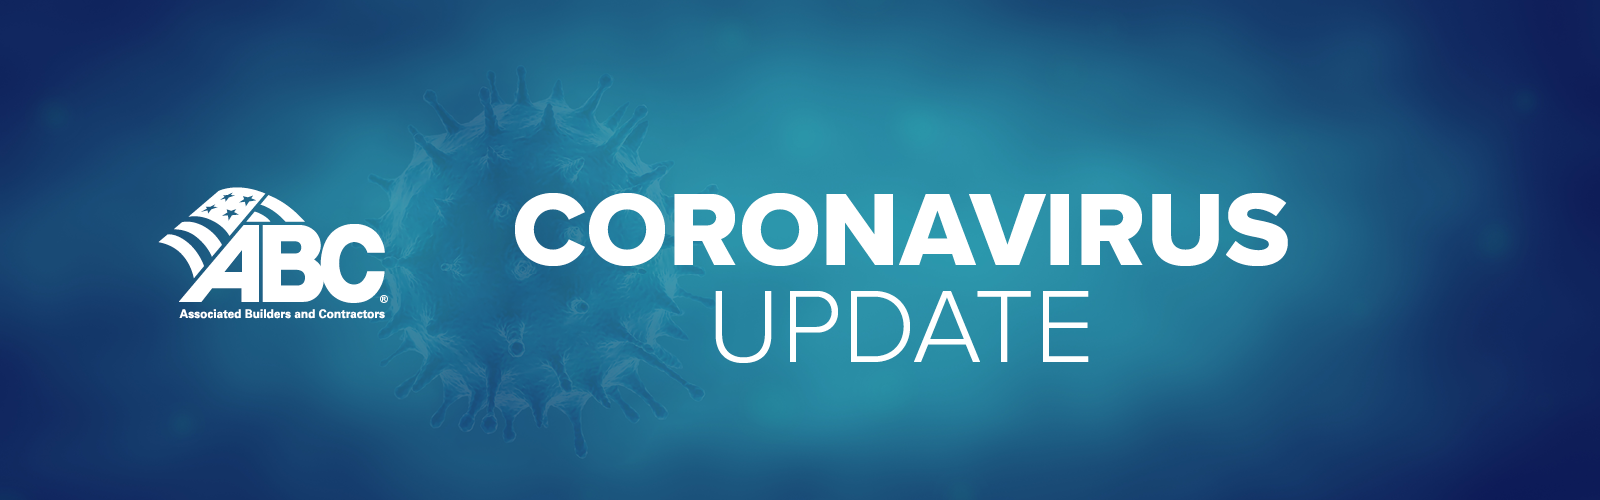 Coronavirus3